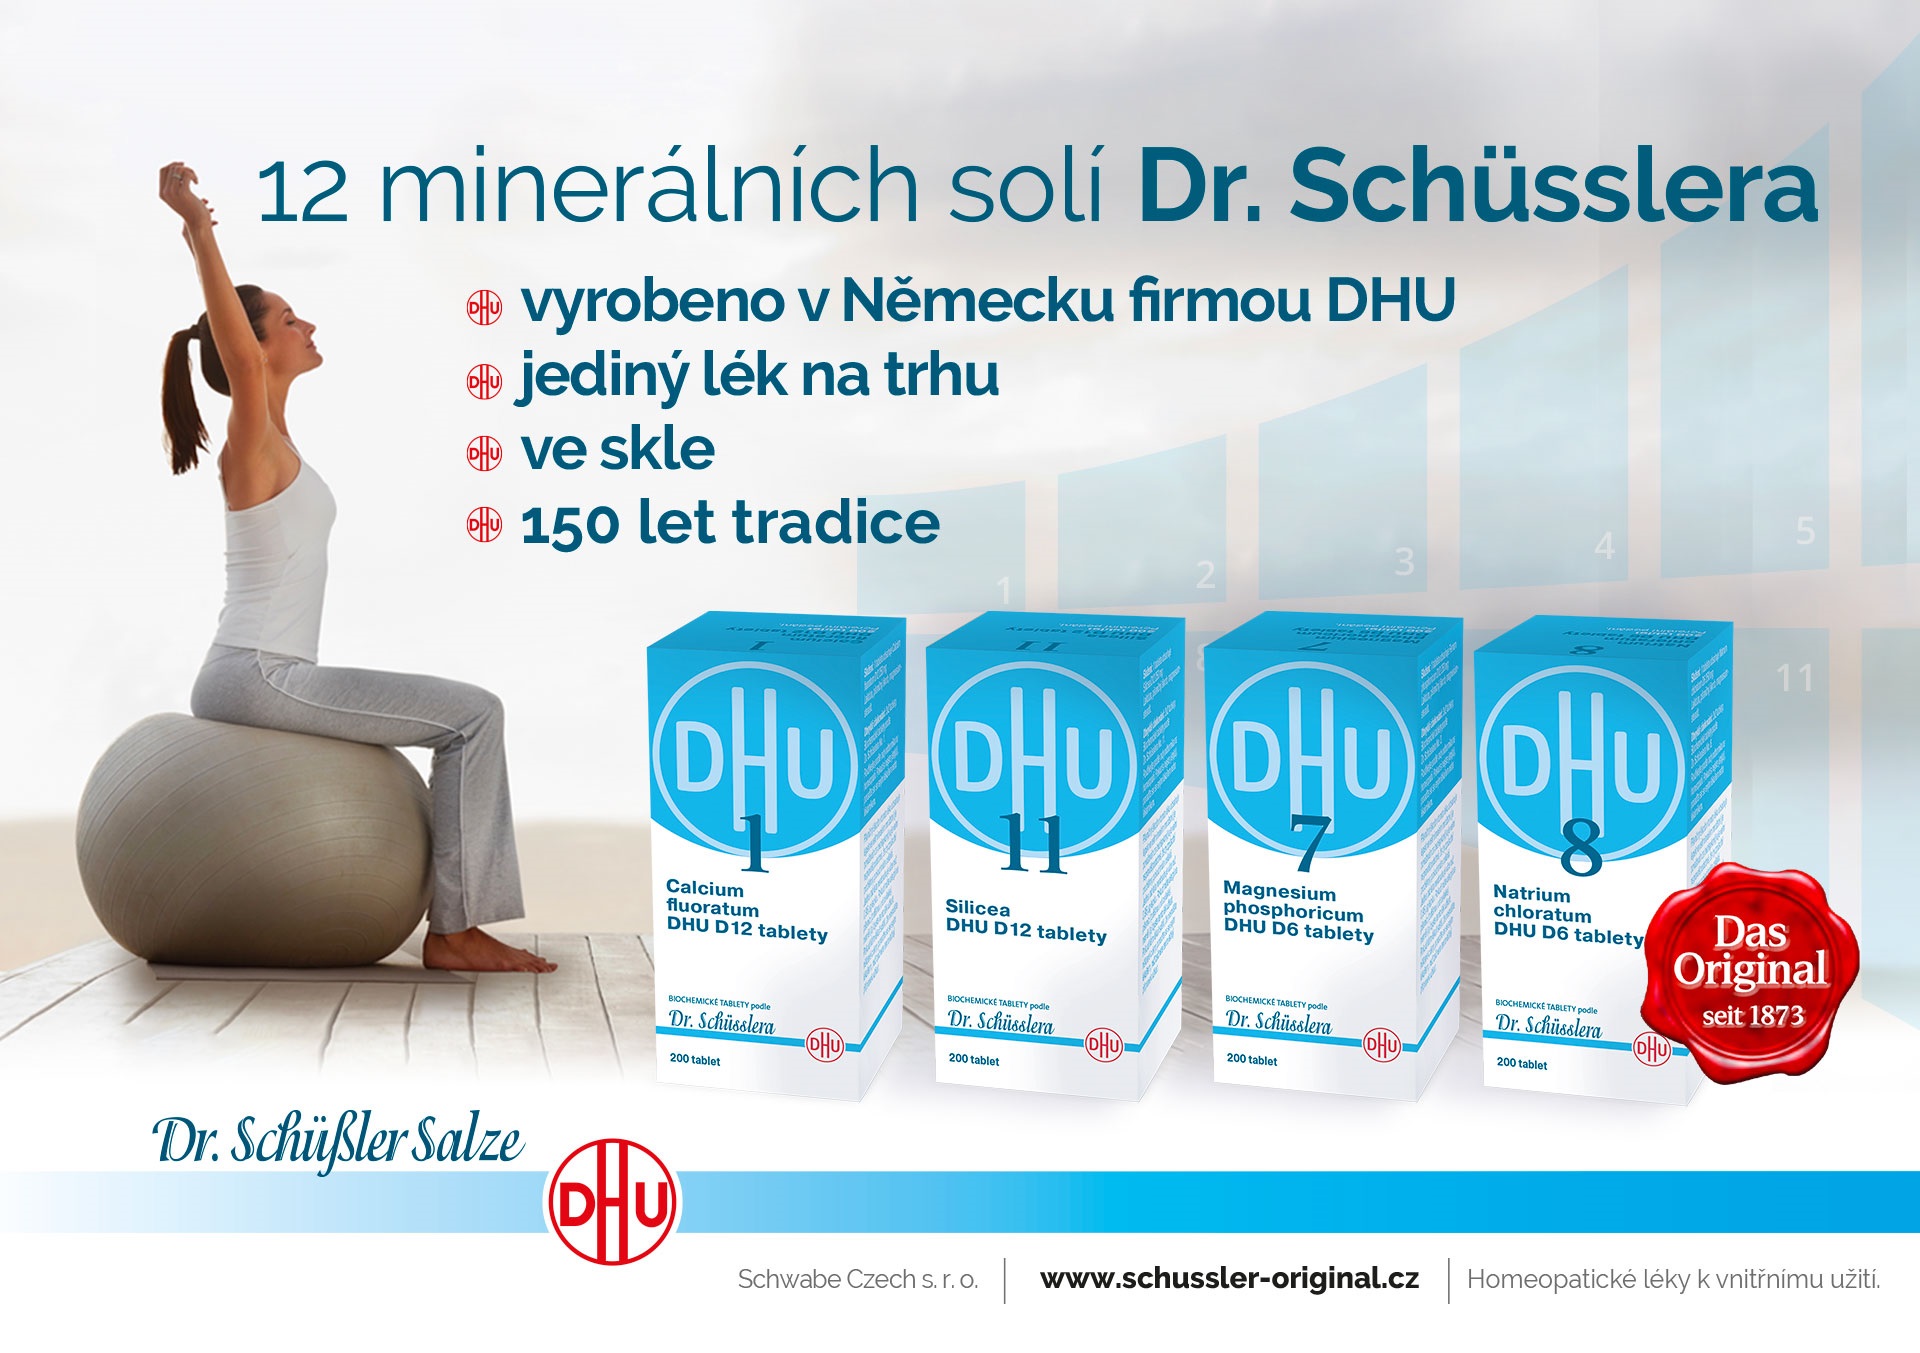 12 minerálních solí Dr. Schusslera